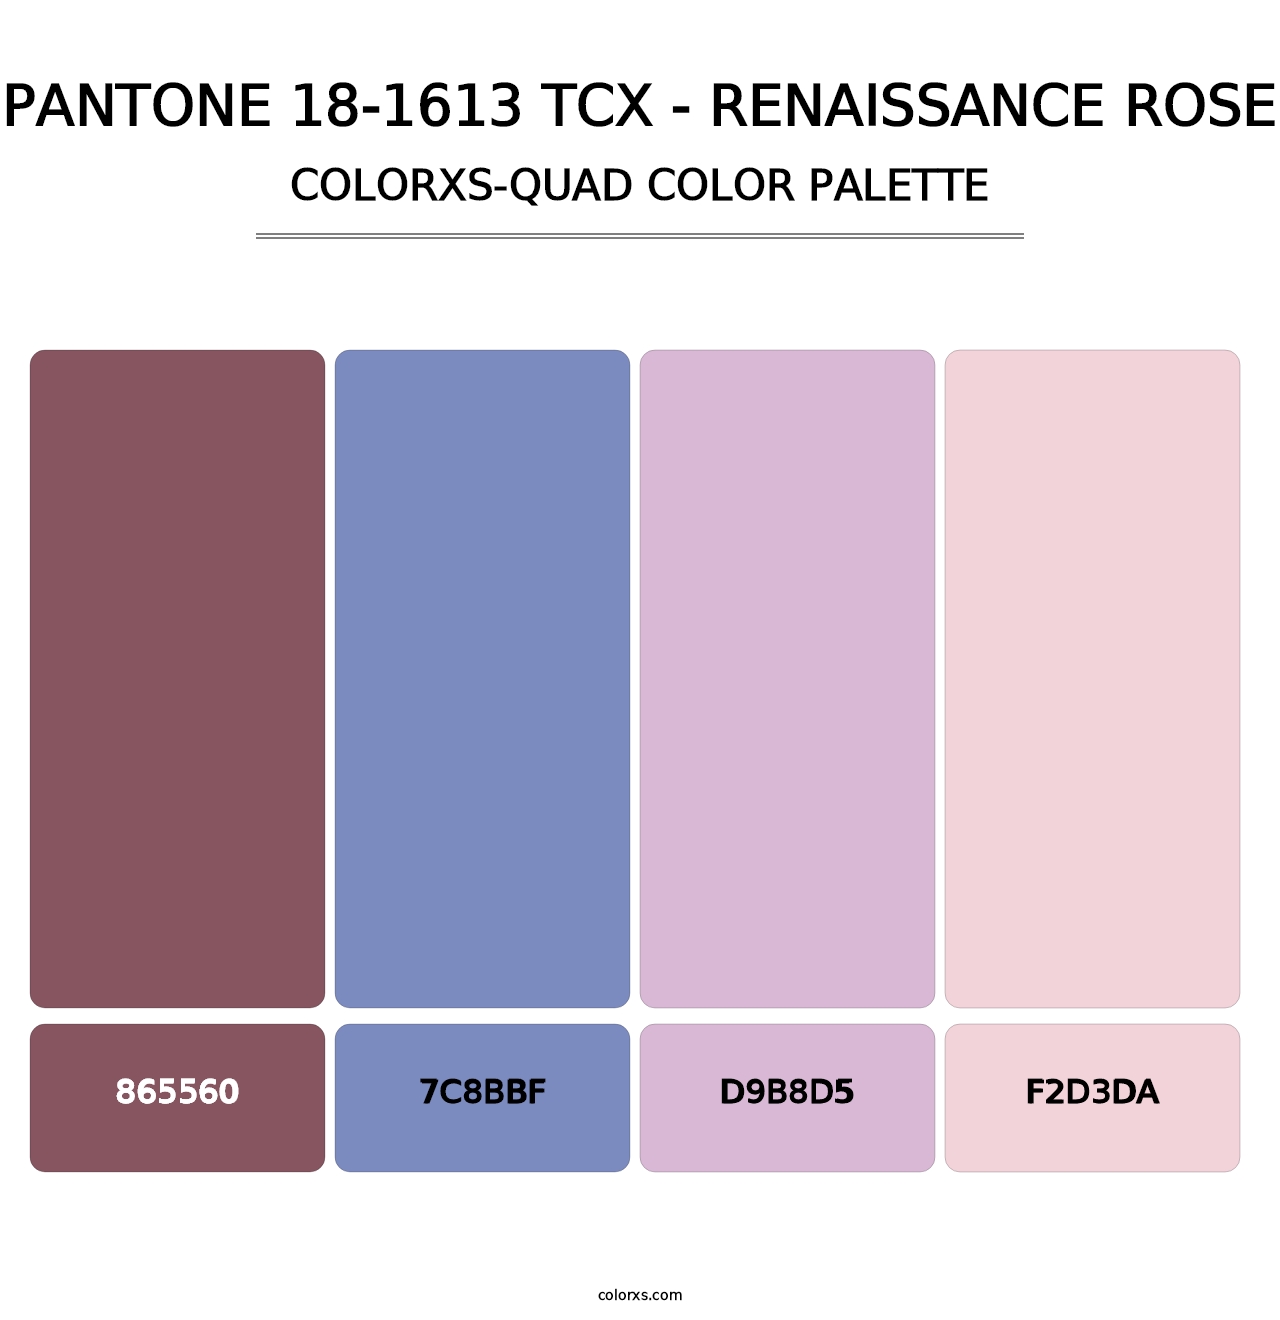 PANTONE 18-1613 TCX - Renaissance Rose - Colorxs Quad Palette